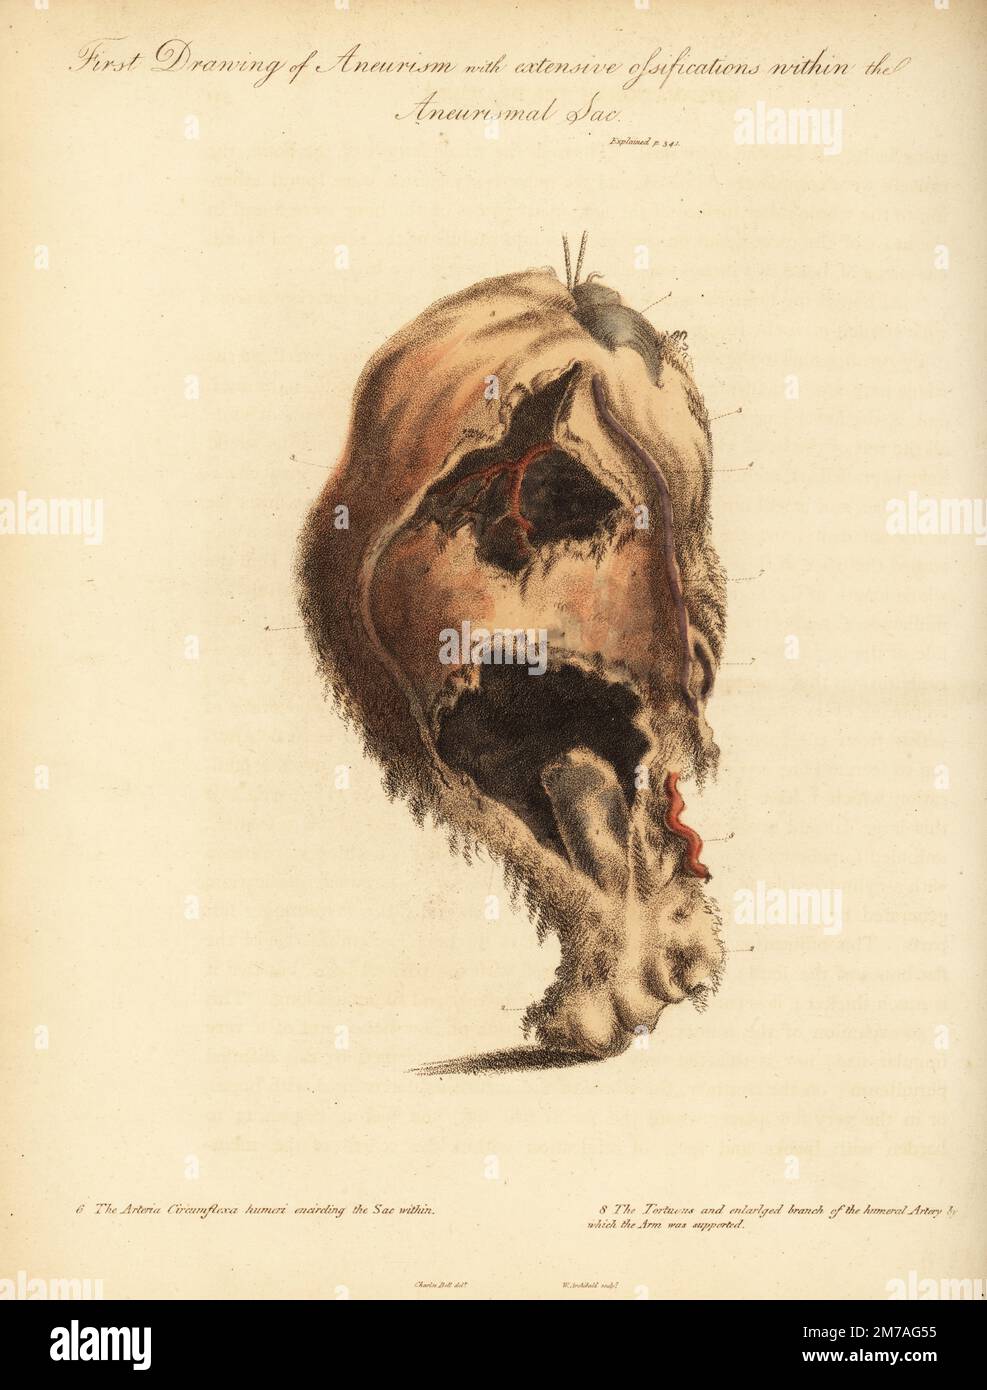 Aneurysmatumor aus dem gebrochenen Arm einer Frau, die von einem Pferd und Karren umgestoßen wurde, 1815. Erstzeichnung von Aneurysma und ausgedehnten Ossifikationen mit dem Aneurismalsack. Kopf des Humerus 1, unterer Teil des Knochens 2, Arteria circumflexa humeri umschließt den Sack innerhalb von 6 und den gewundenen und vergrößerten Ast der Oberarmarterie. Handfarbene Kupferplatte, Gravur von William Archibald, nach einer Illustration von John Bell aus seinen eigenen Prinzipien der Chirurgie, wie sie sich auf Wunden, Geschwüre und Fisteln beziehen, Longman, Hurst, Rees, Orme und Brown, London, 1815. Stockfoto